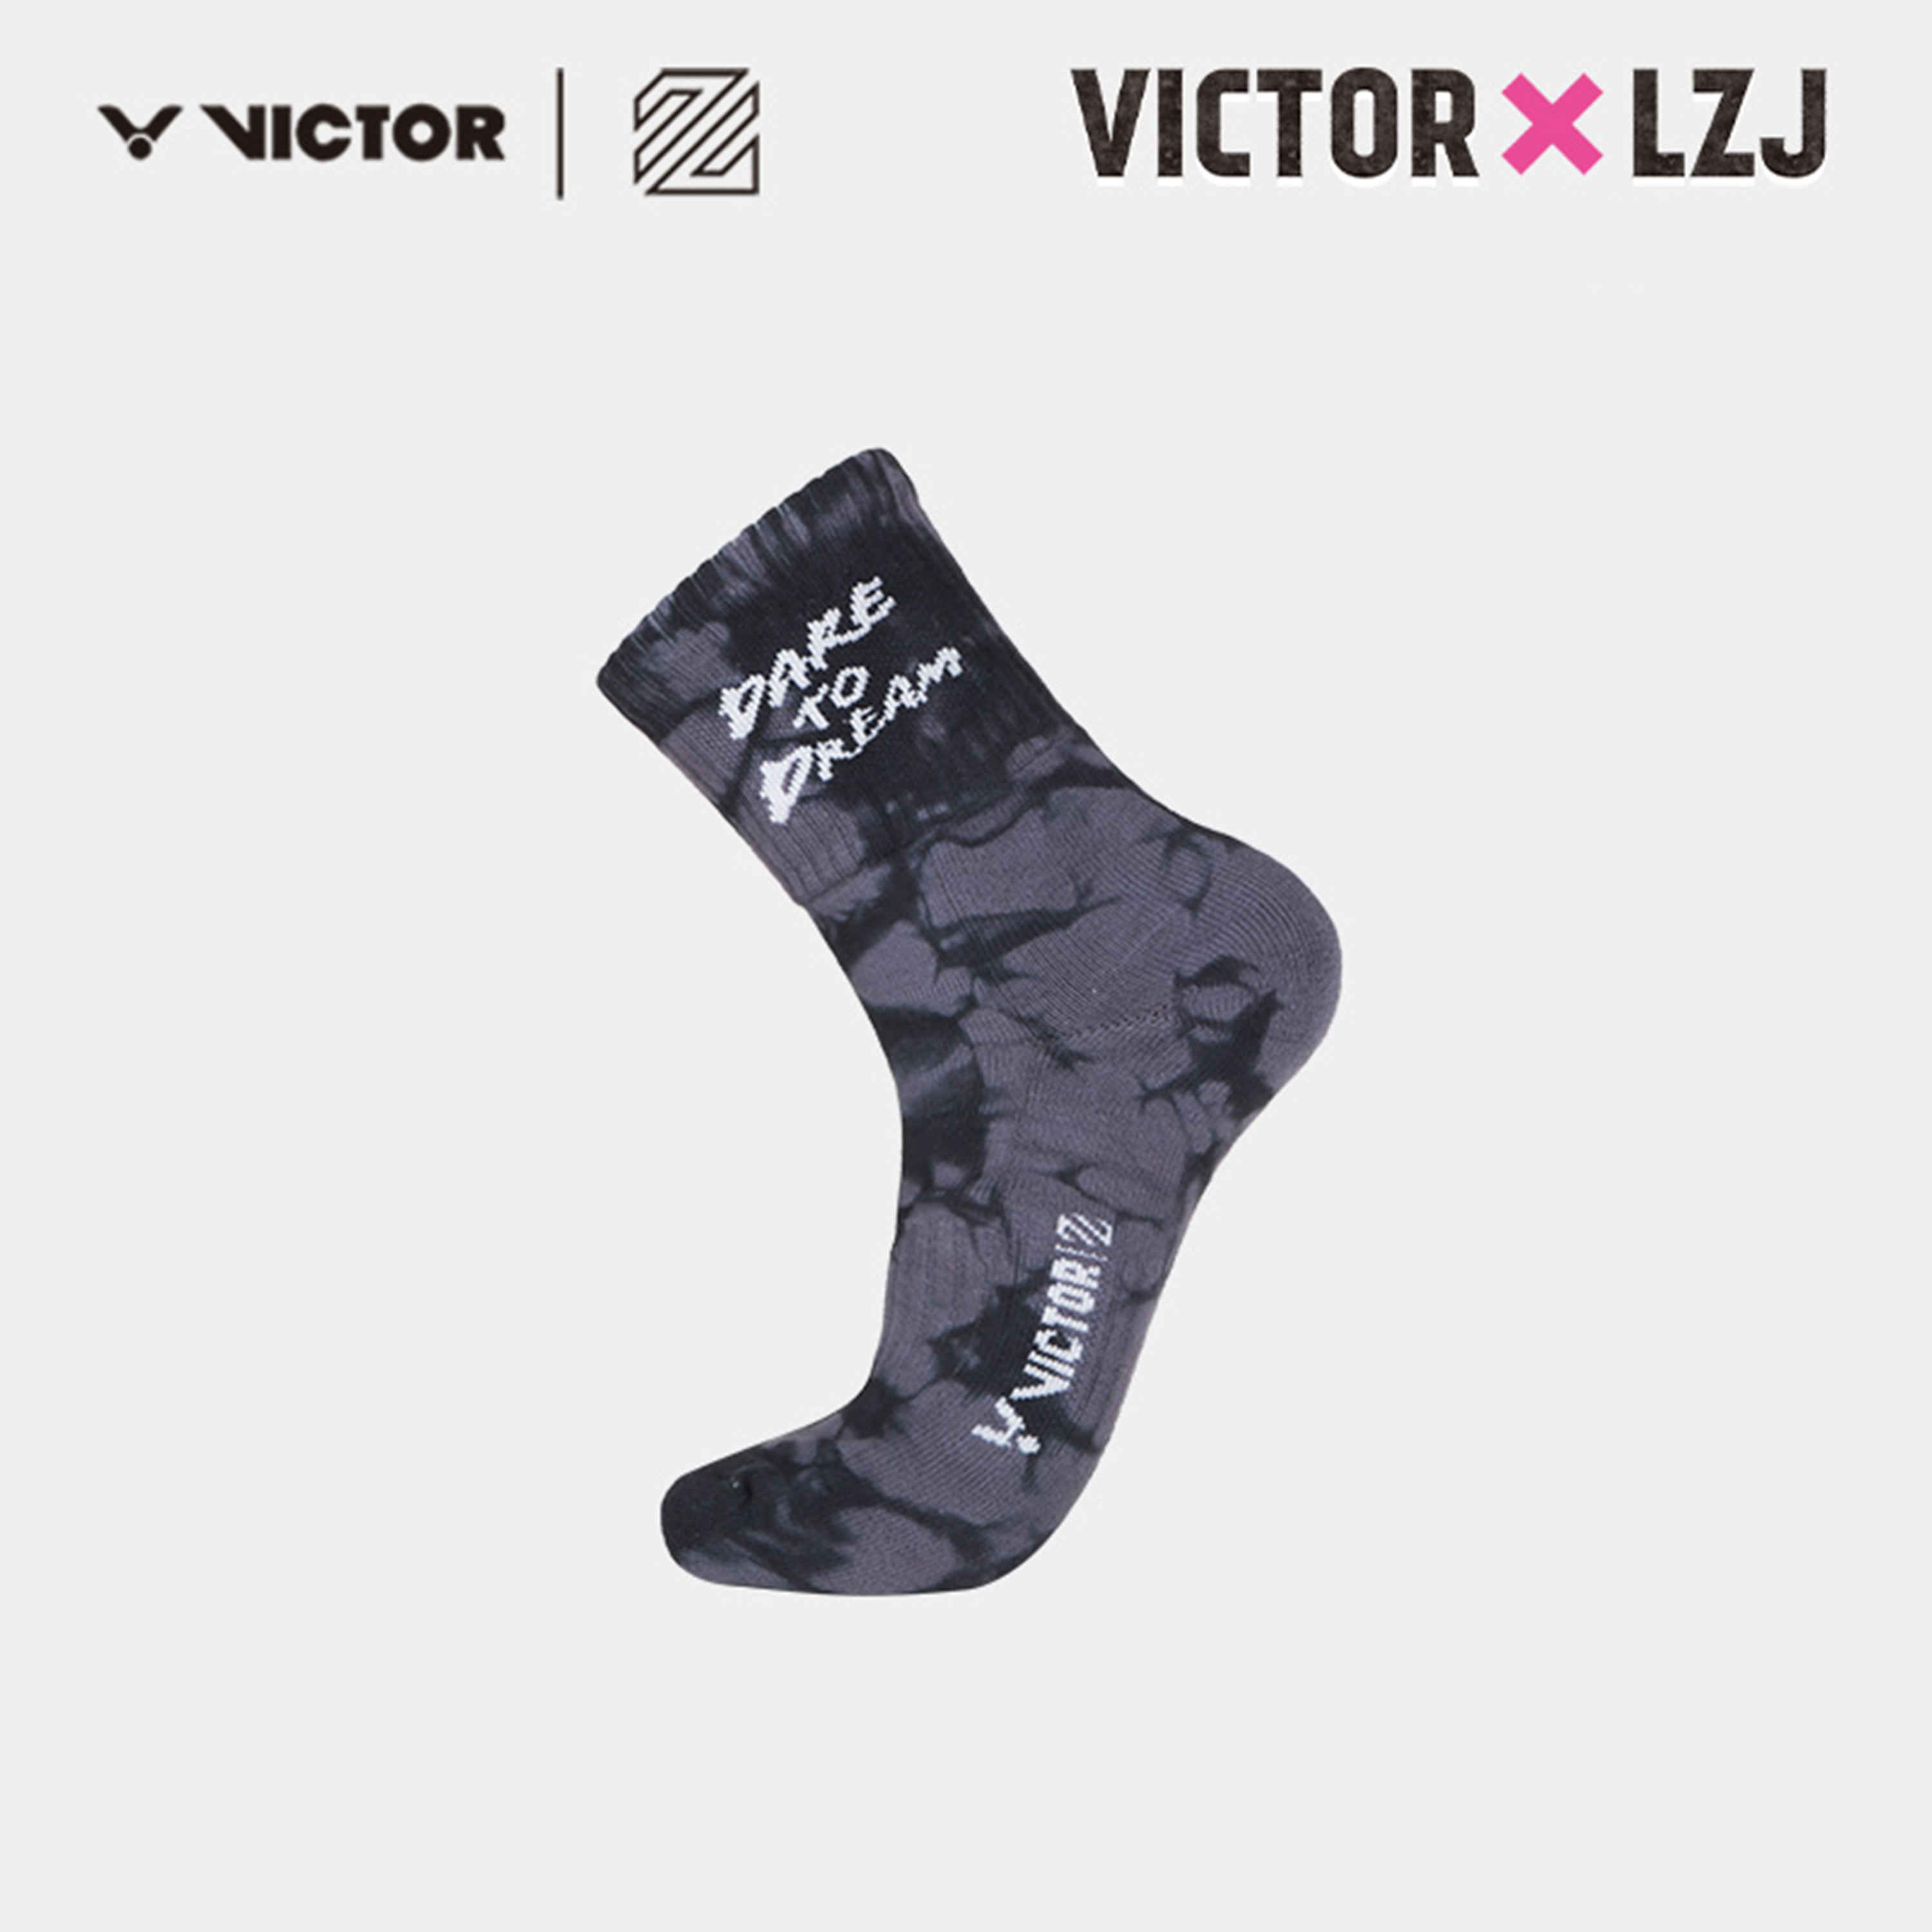 Victor X LZJ Sports Socks SKLZJ358 Grey